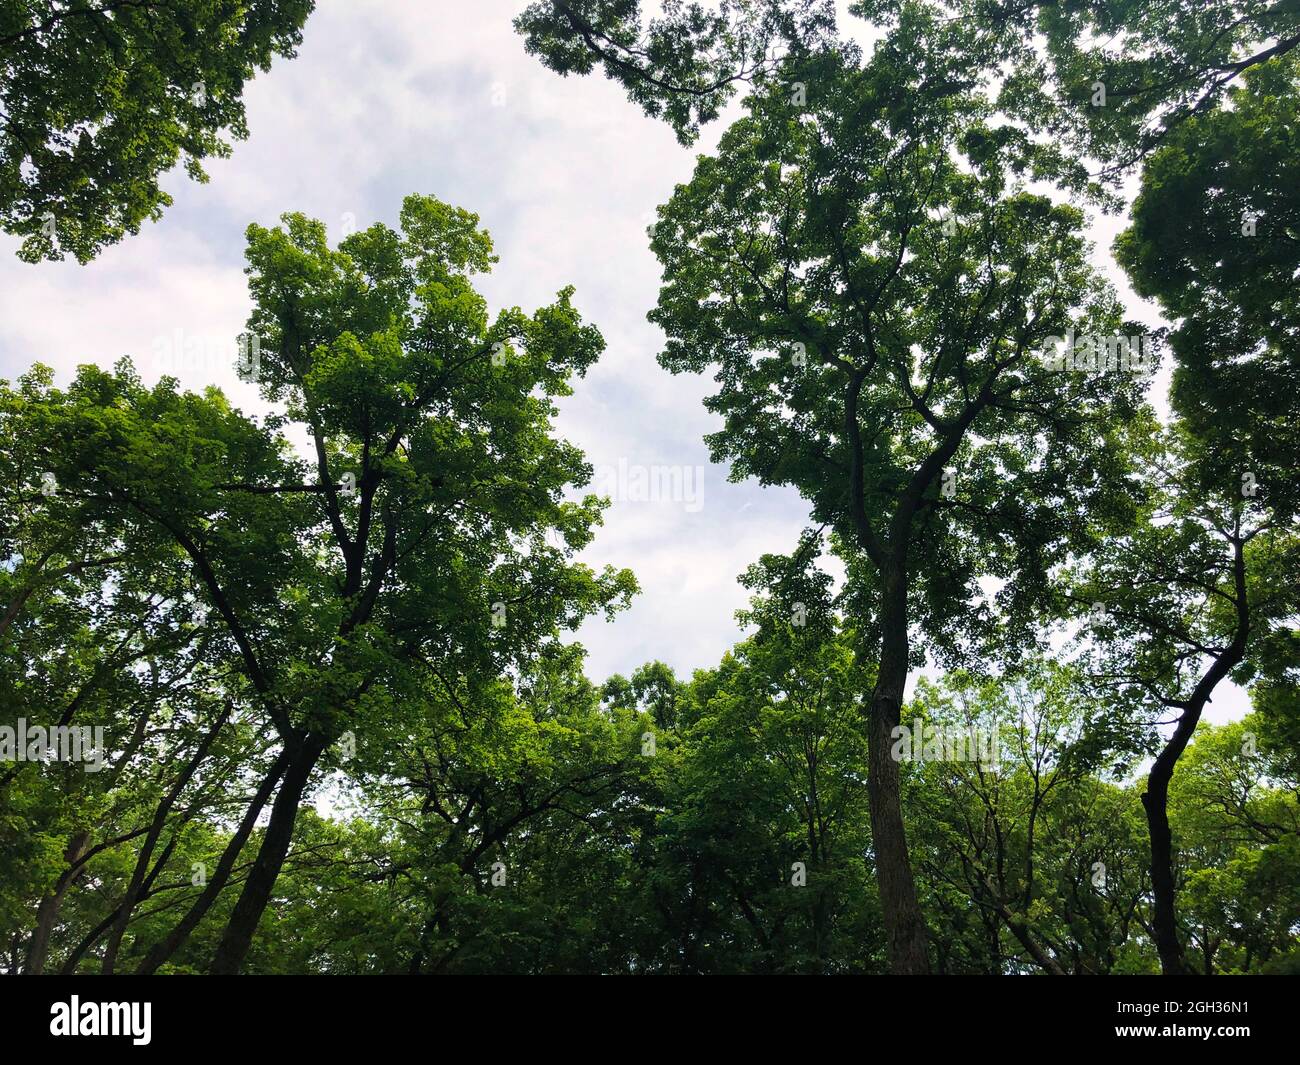 Alberi nella foresta: Guardando attraverso il baldacchino albero in una spettacolare giornata estiva soleggiata con alberi che mostrano foglie verdi piene contro il cielo blu Foto Stock